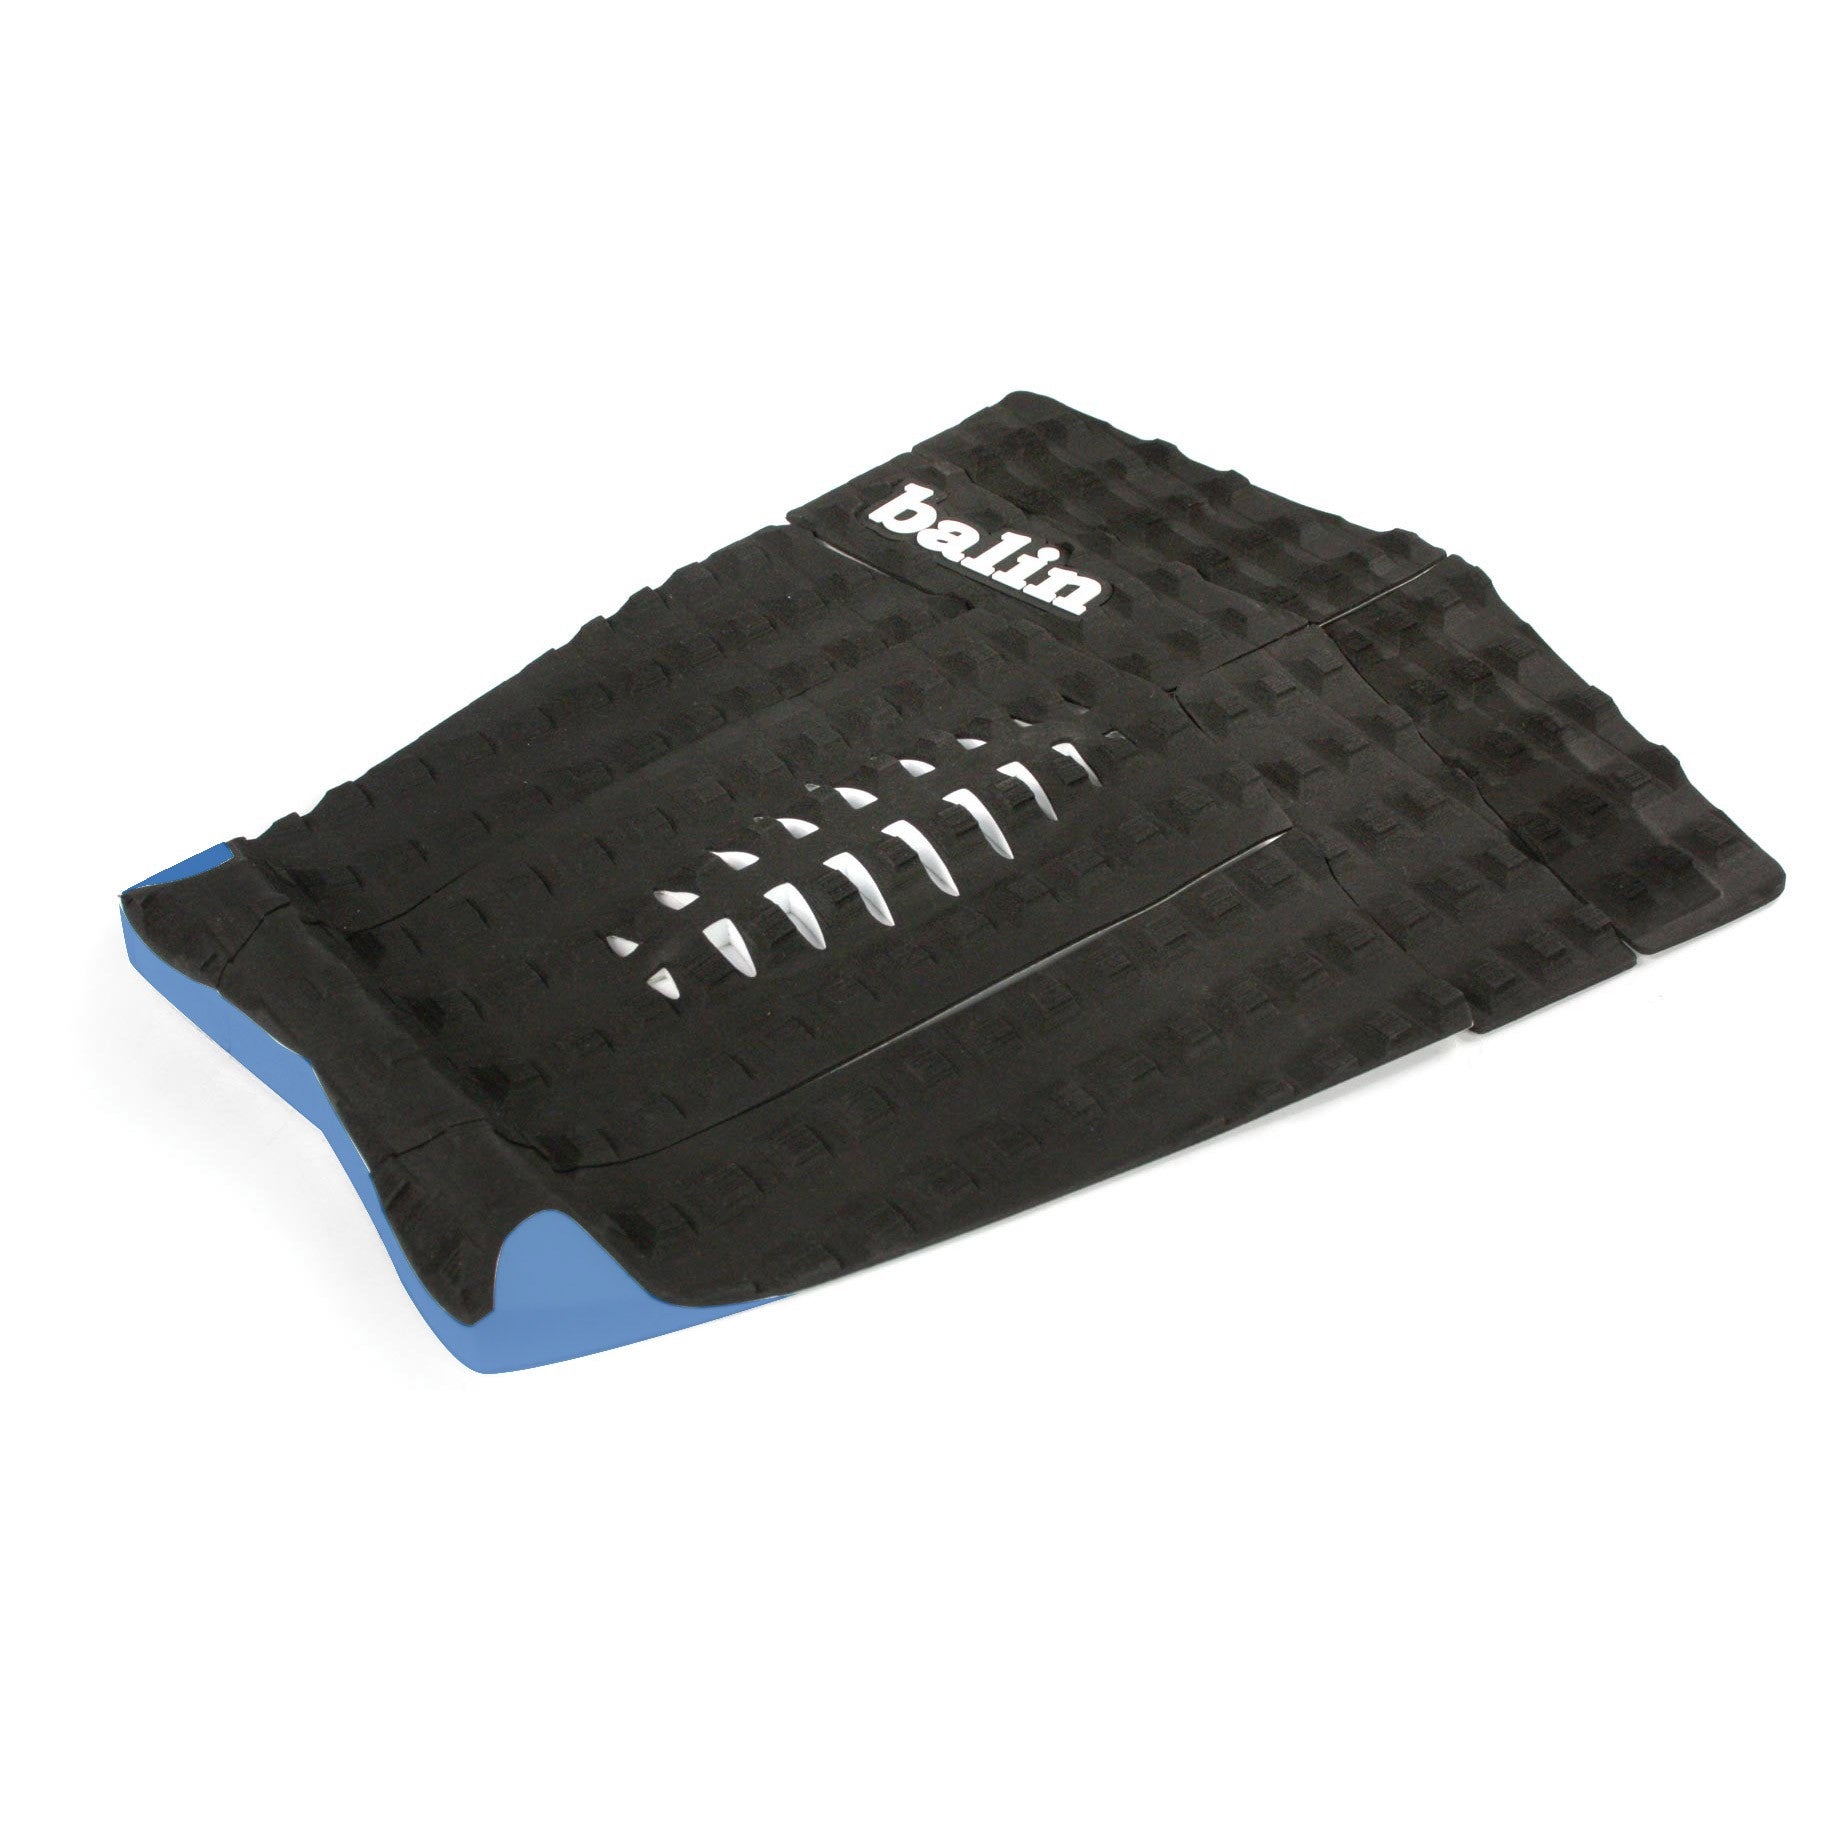 BALIN - Splitter Longboard Traction Pad - Black / Blue